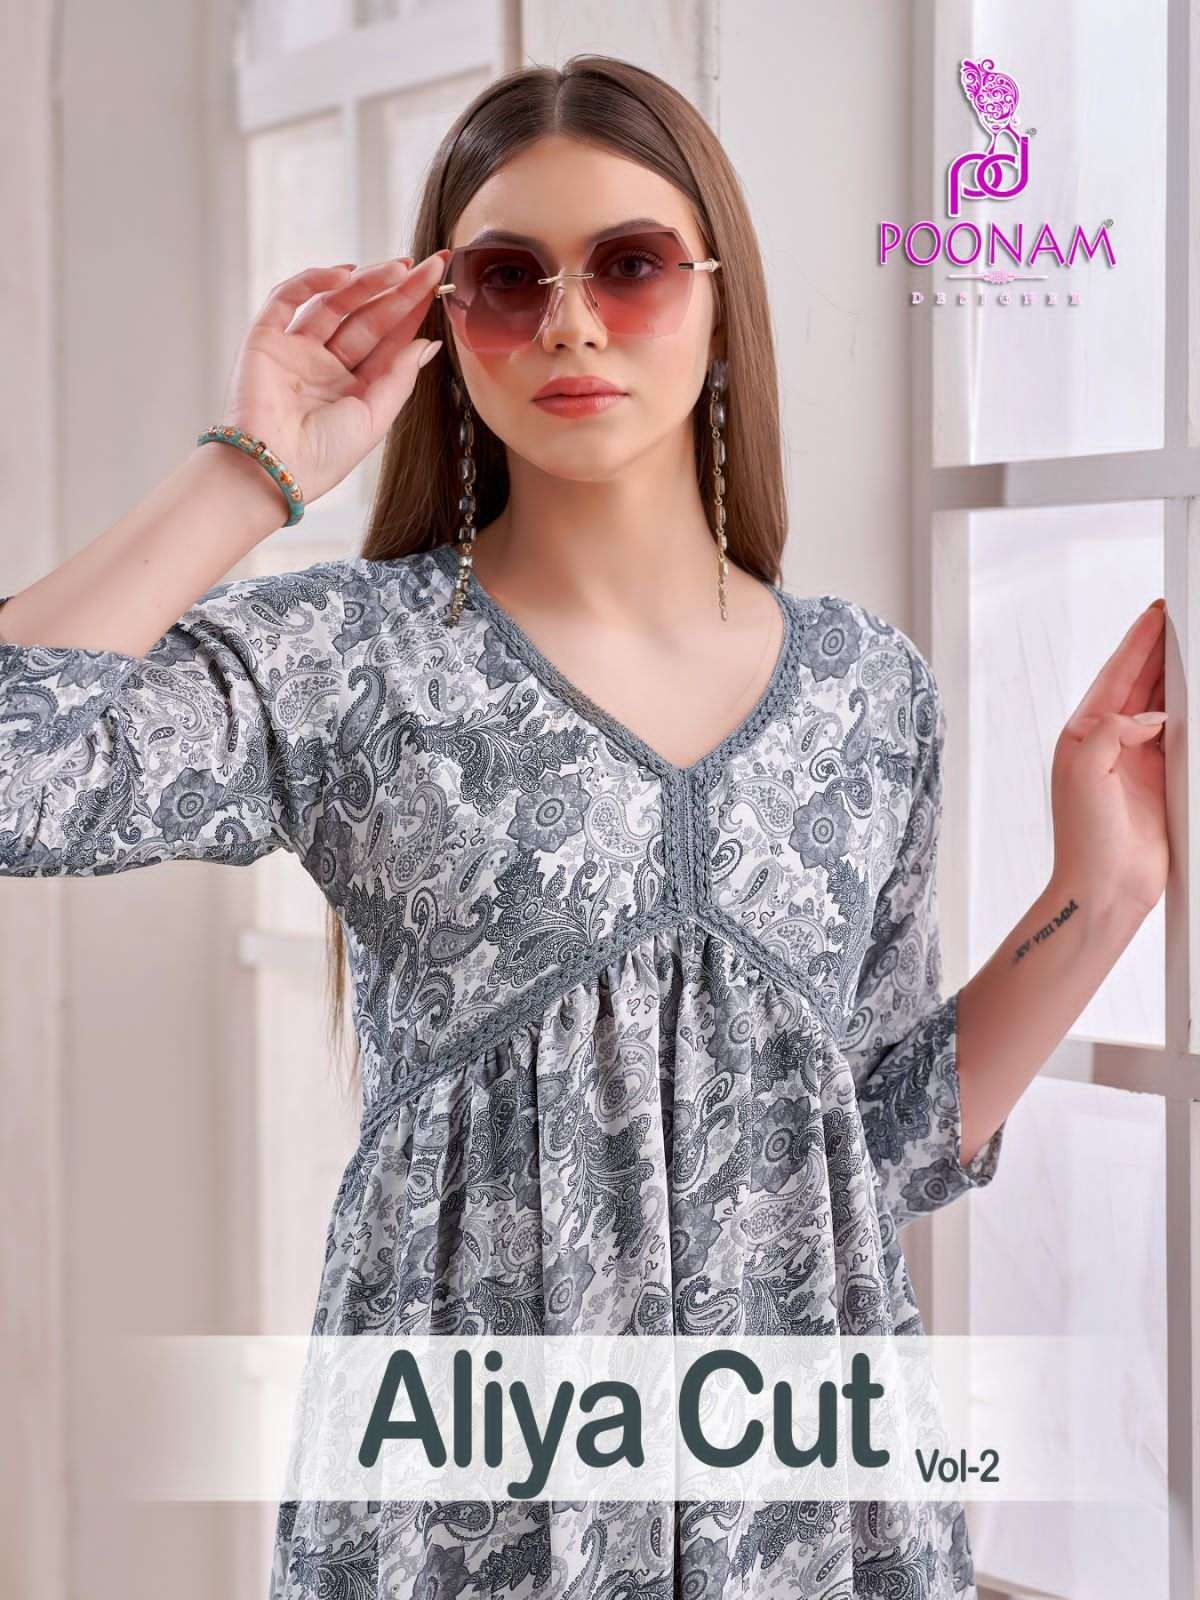 aliya cut vol 2 by poonam designer adorable printed fancy alia style gown 